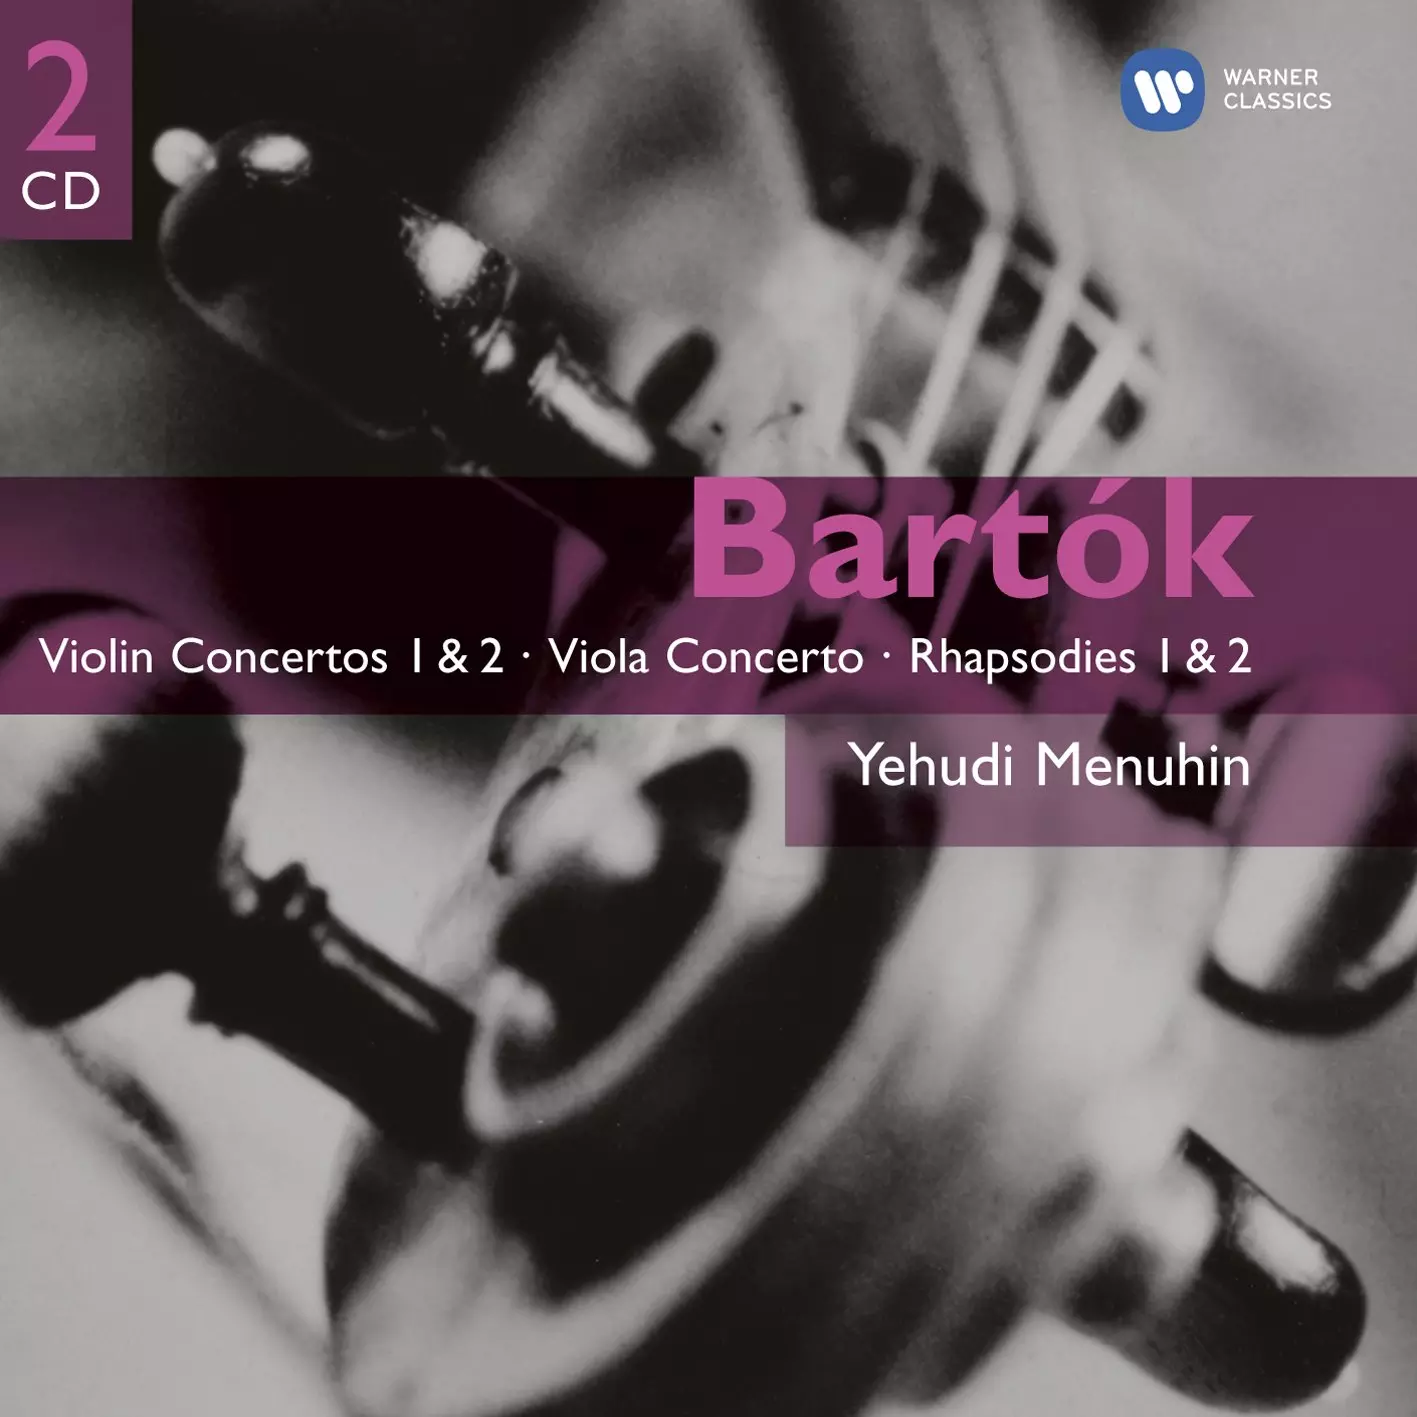 Bartók: Violin Concertos 1 & 2, Viola Concerto